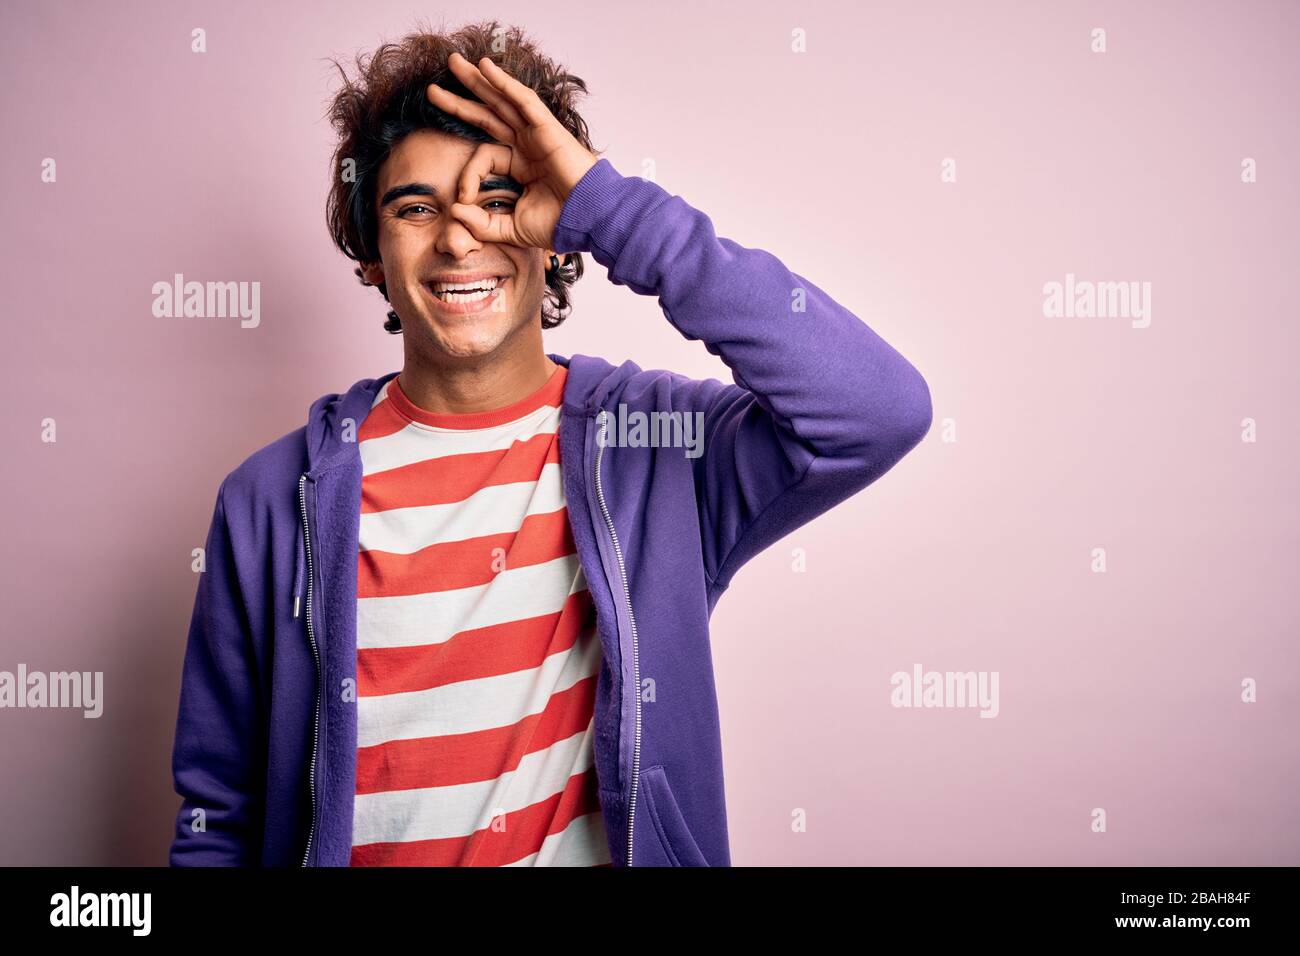 Jeune homme portant un t-shirt rayé et un sueur pourpre sur un fond rose isolé faisant un geste ok avec sourire à la main, oeil regardant à travers les doigts W Banque D'Images